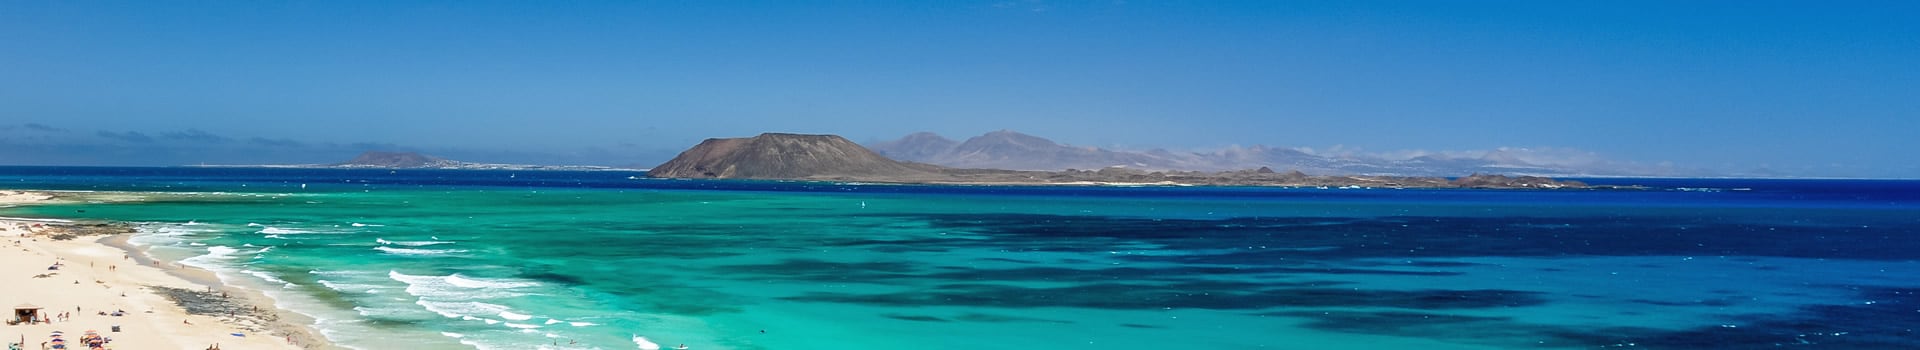 Billetes de Barco de Playa Blanca (Lanzarote) a Corralejo (Fuerteventura)